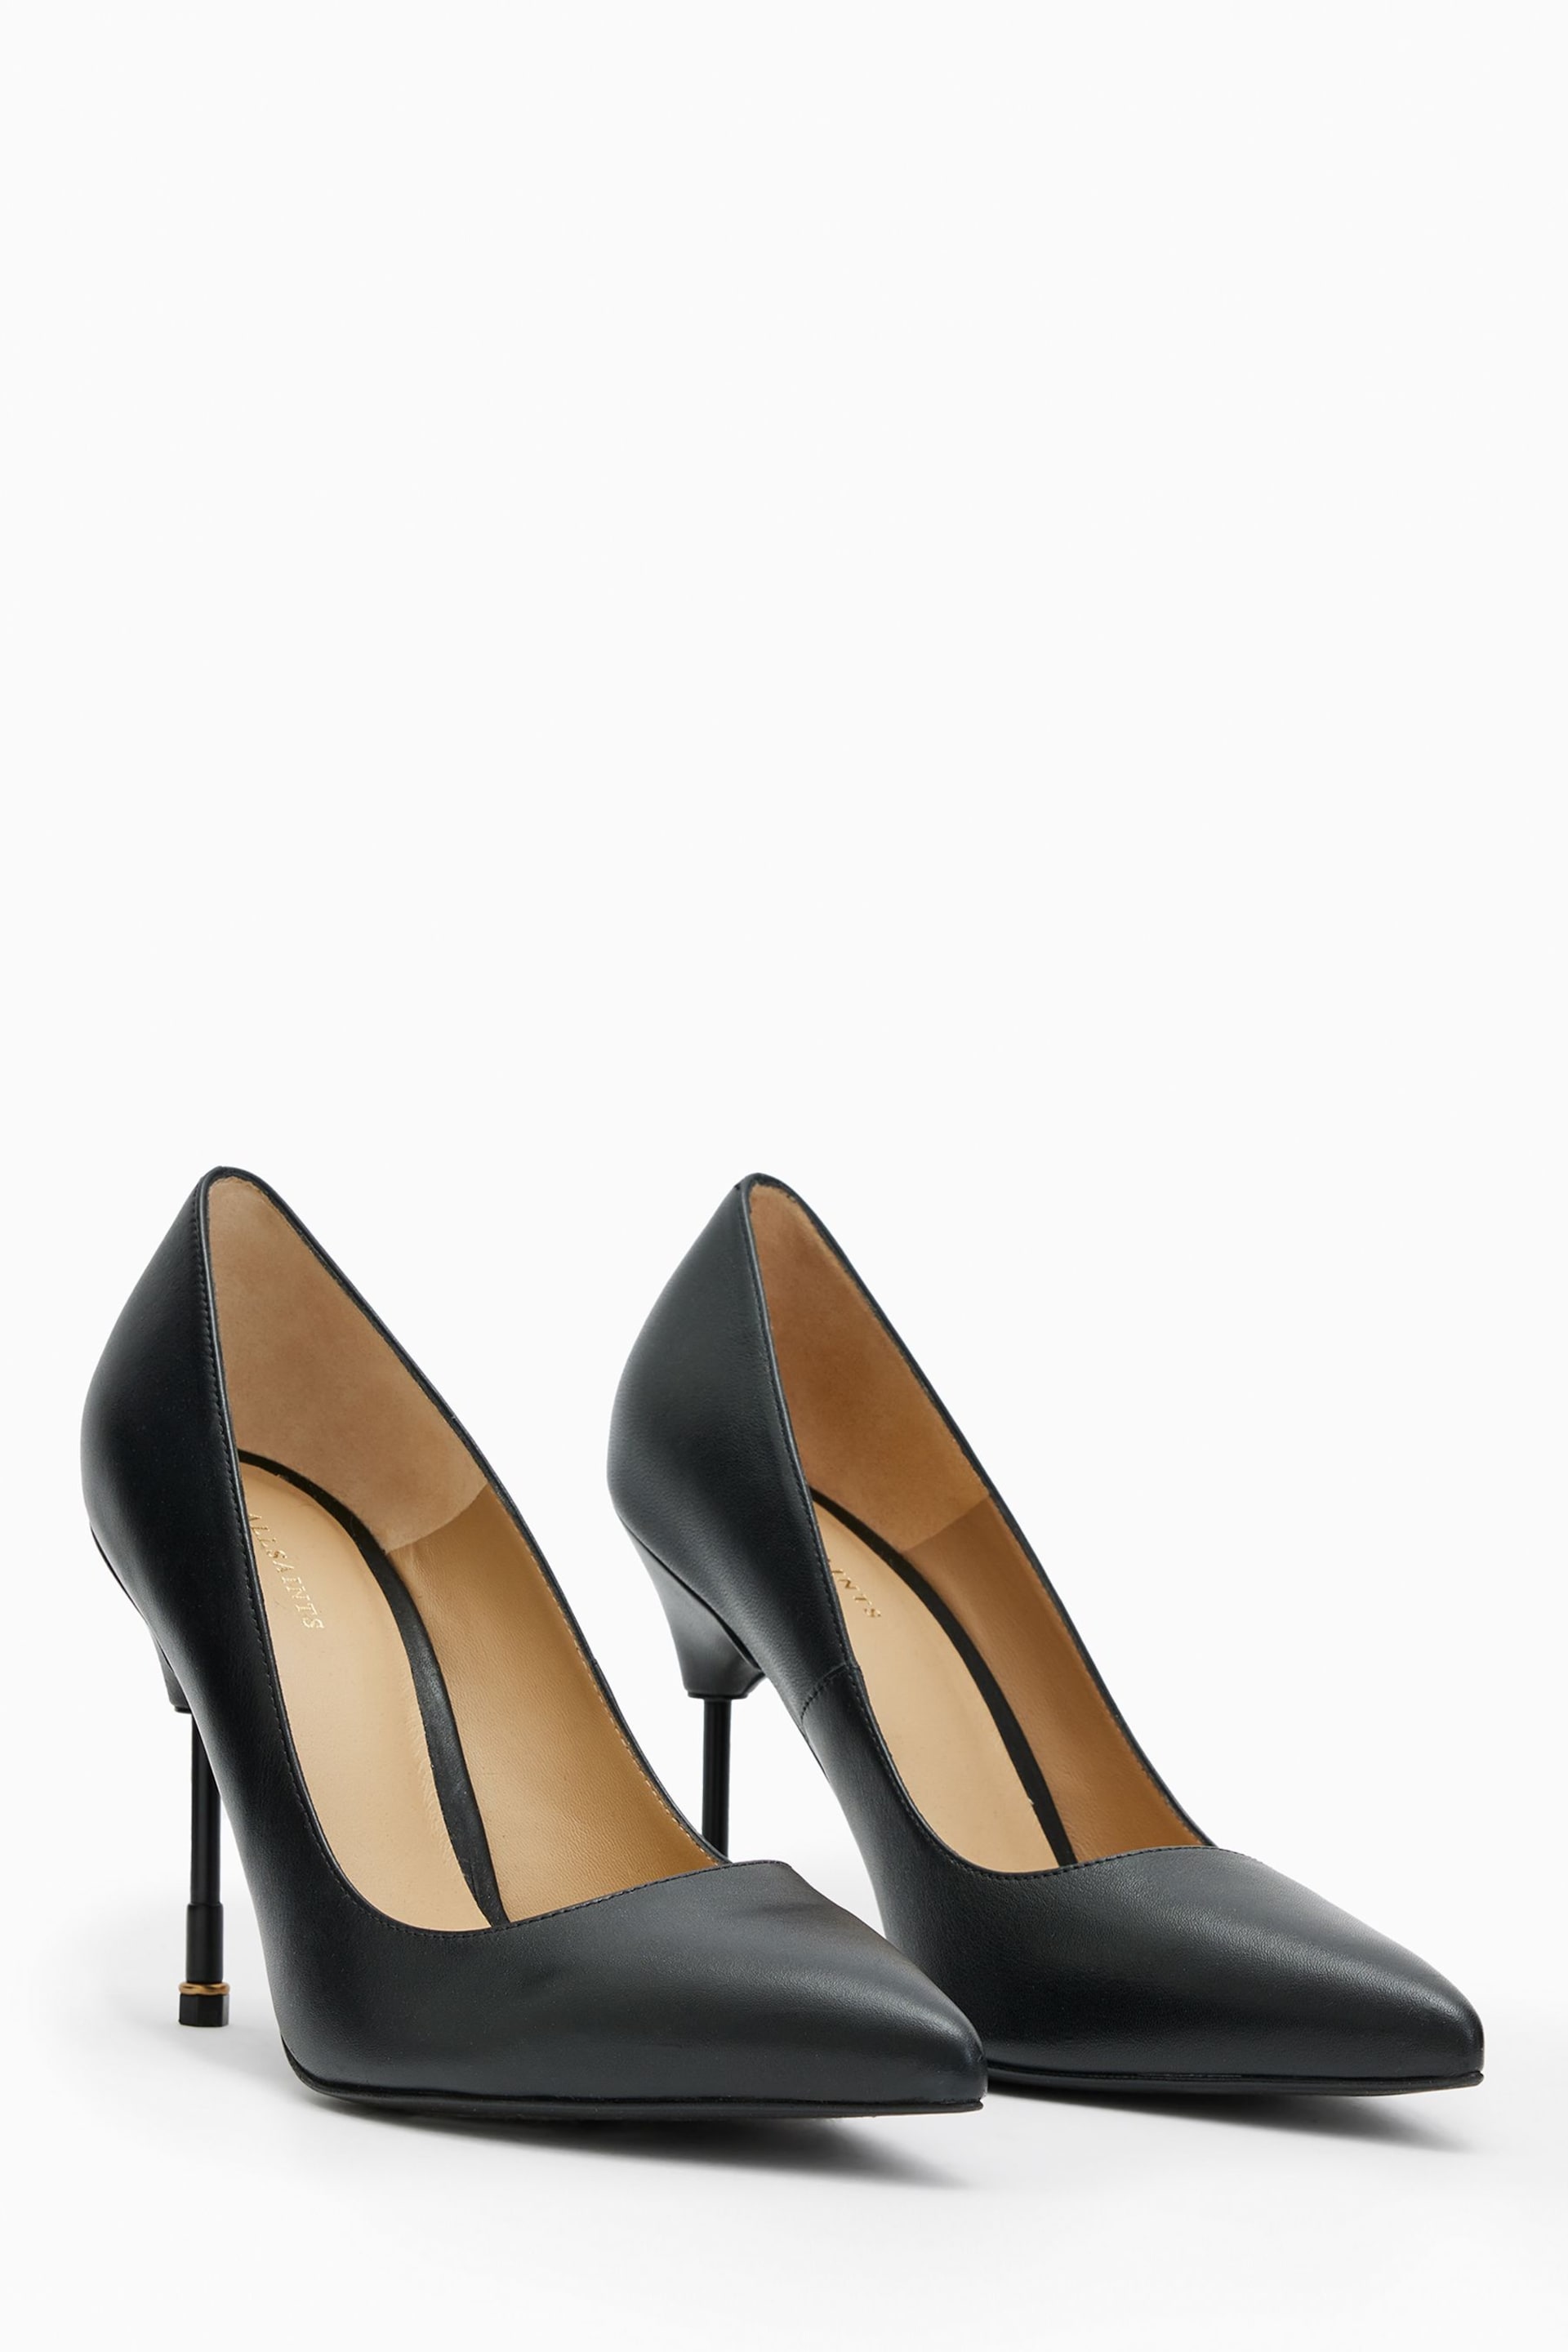 AllSaints Black Nova Court Shoes - Image 2 of 7